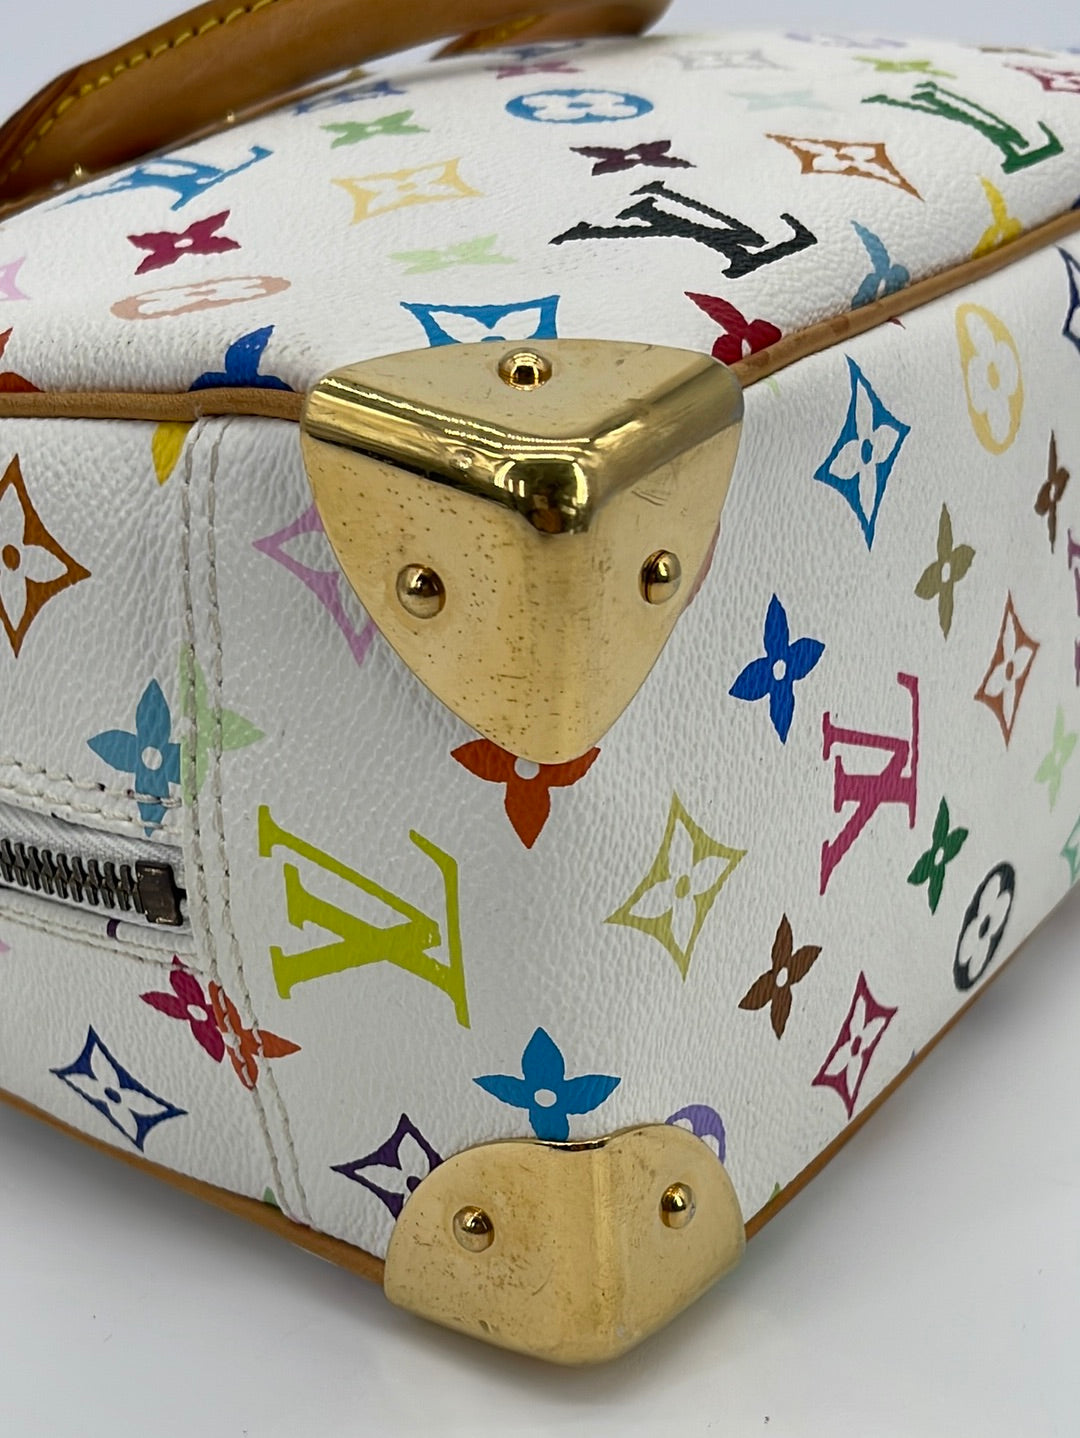 Louis Vuitton White Monogram Multicolor Trouville Bag at 1stDibs